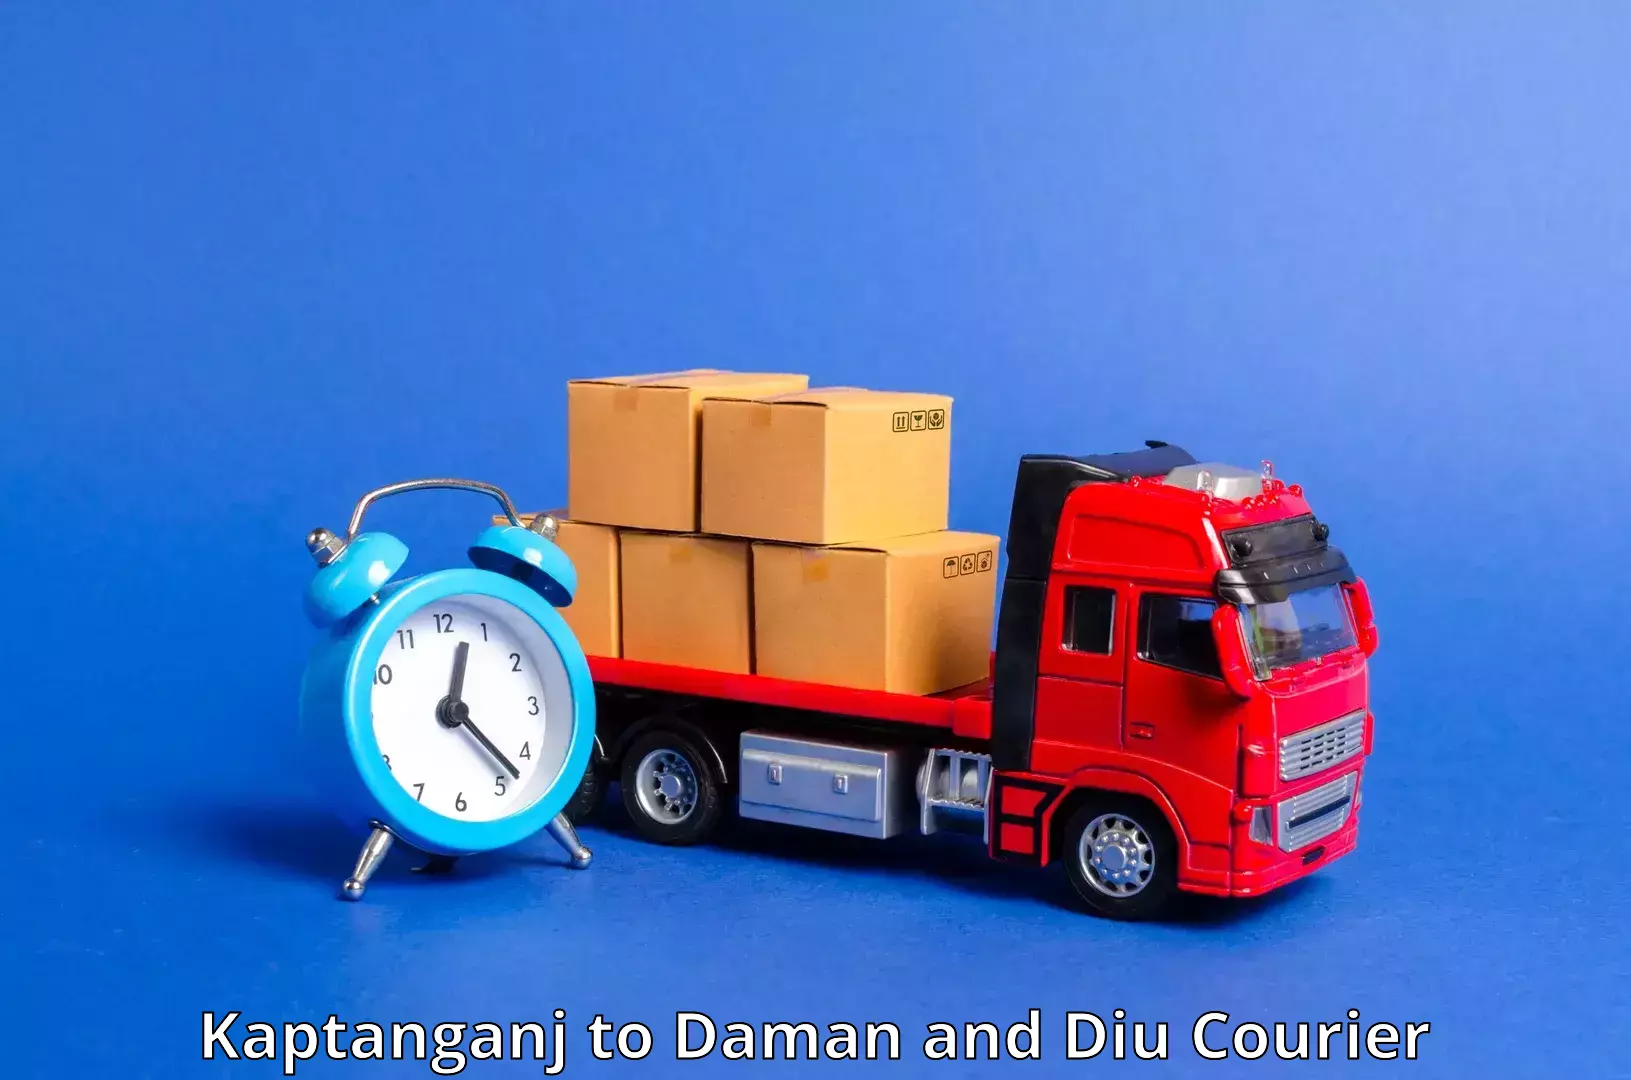 Smart courier technologies Kaptanganj to Daman and Diu